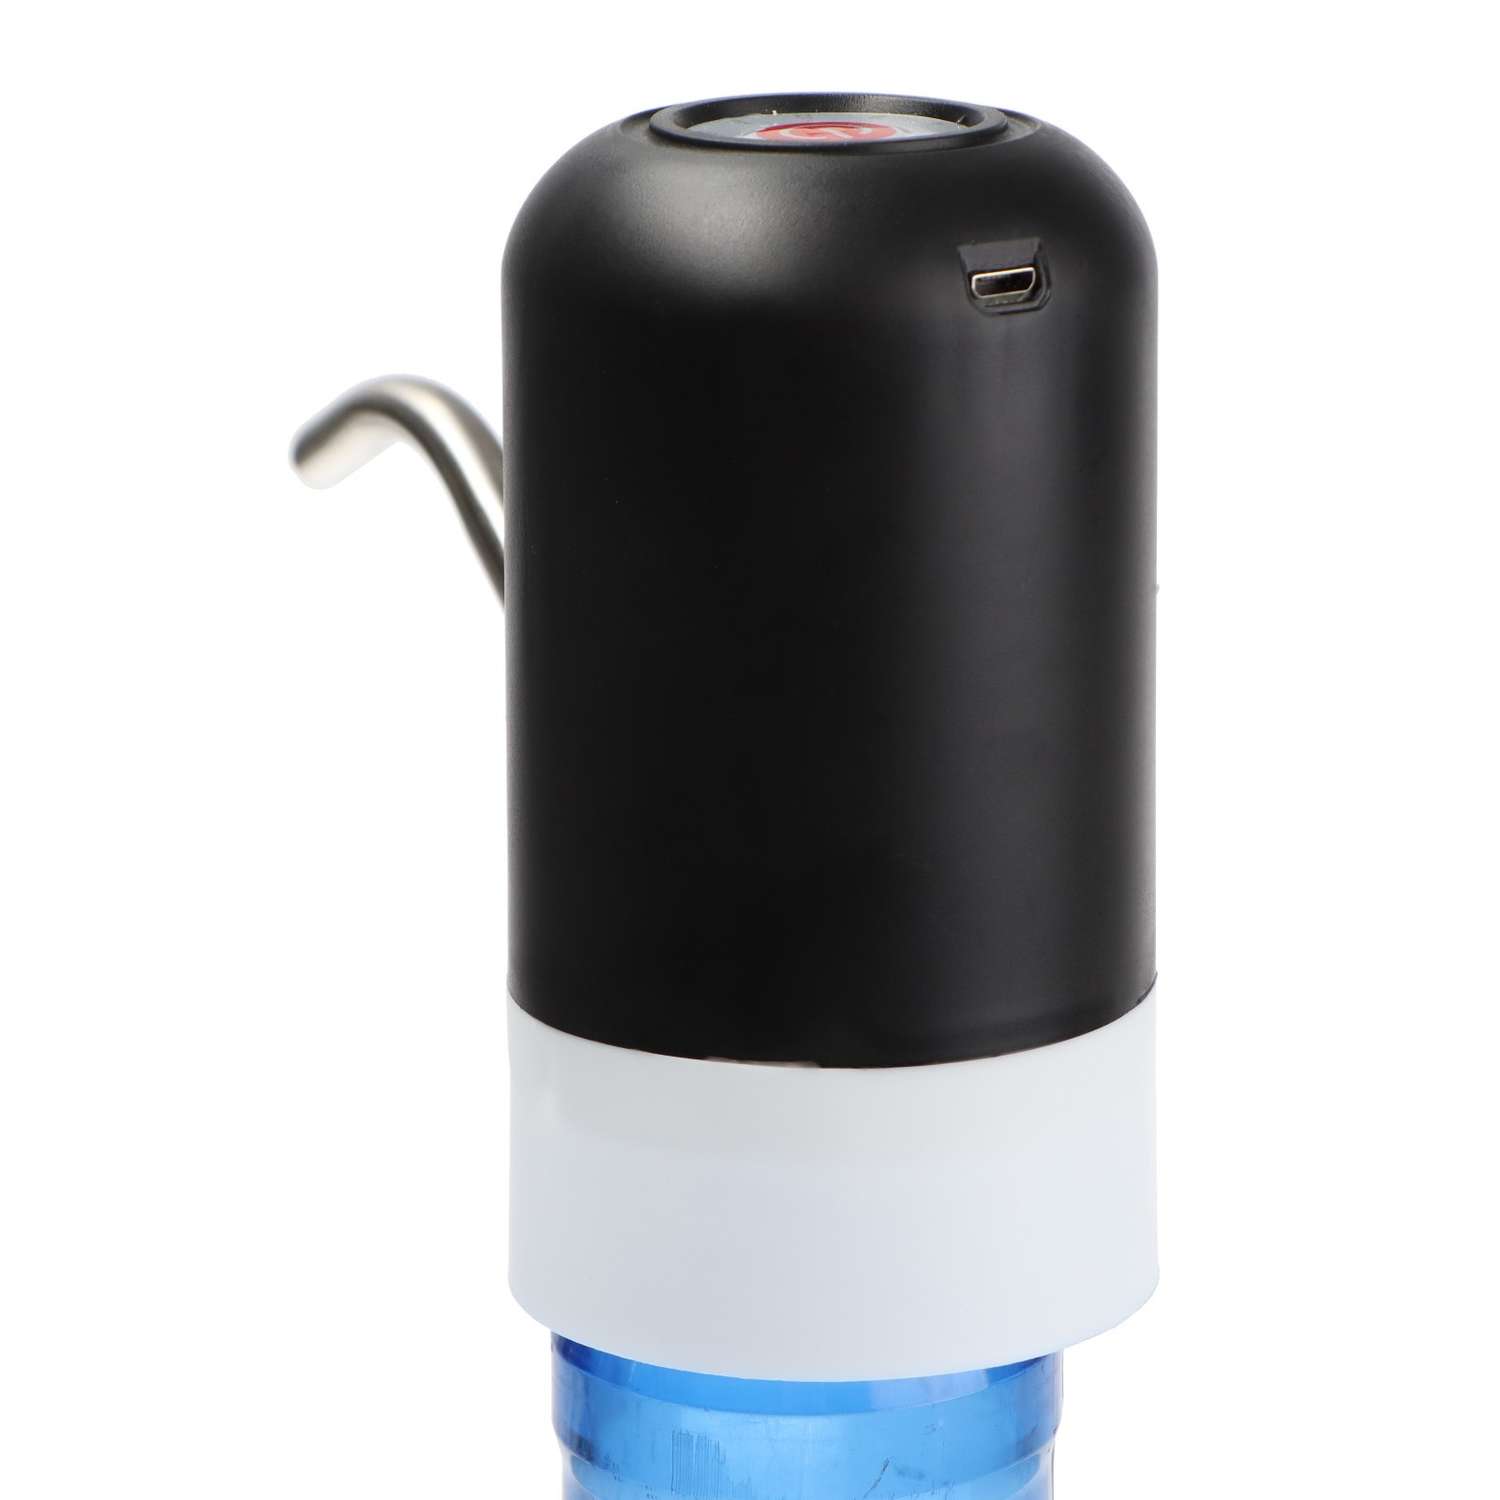 Помпа Luazon Home для воды LWP-05 электрическая 4 Вт 1.2 л/мин 1200 мАч от USB белая - фото 13